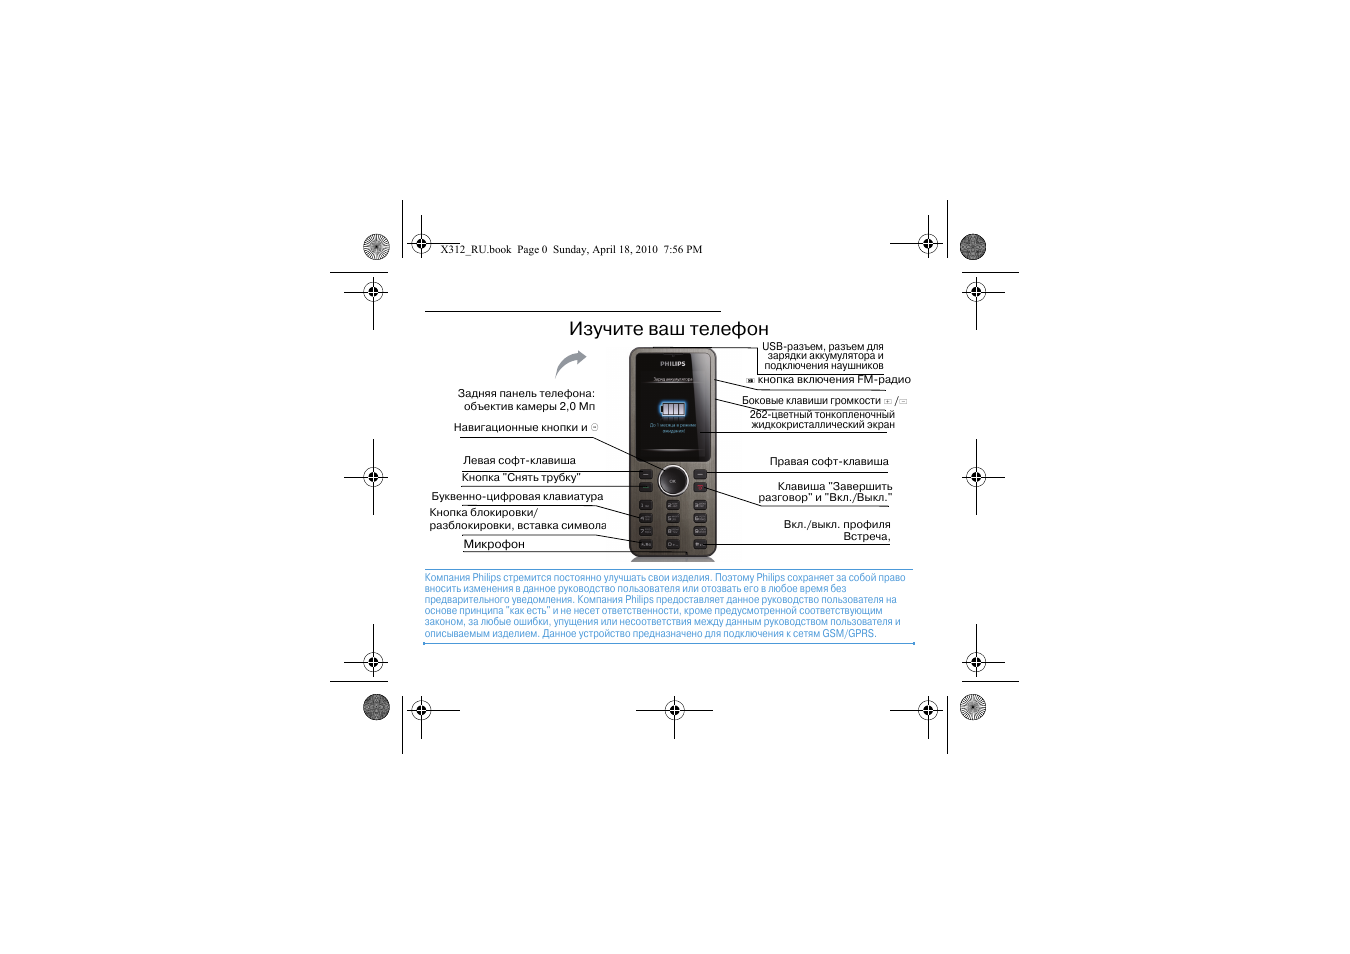 Телефон филипс как включить звук. Кнопочный телефон Филипс Xenium инструкция пользования. Инструкция по эксплуатации кнопочного телефона Филипс Xenium. Philips Xenium x312. Инструкция к телефону Филипс кнопочный Xenium.